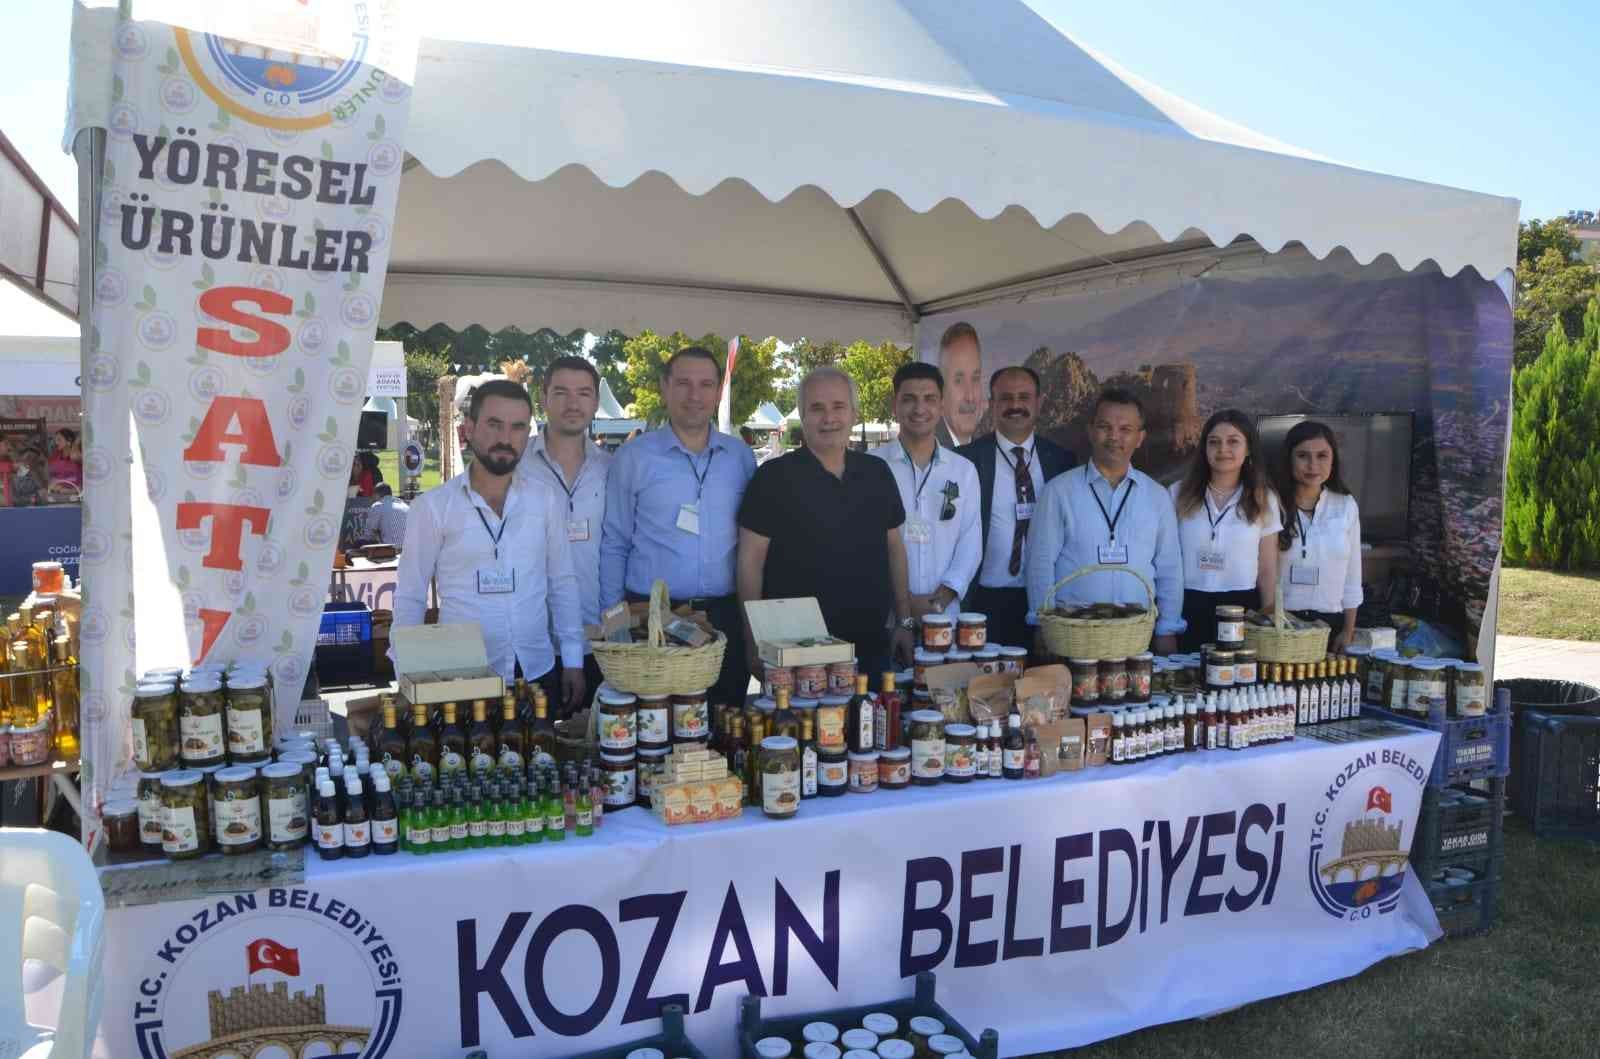 Uluslarası Adana Lezzet Festivali’nde yöresel ürünlere yoğun ilgi #adana